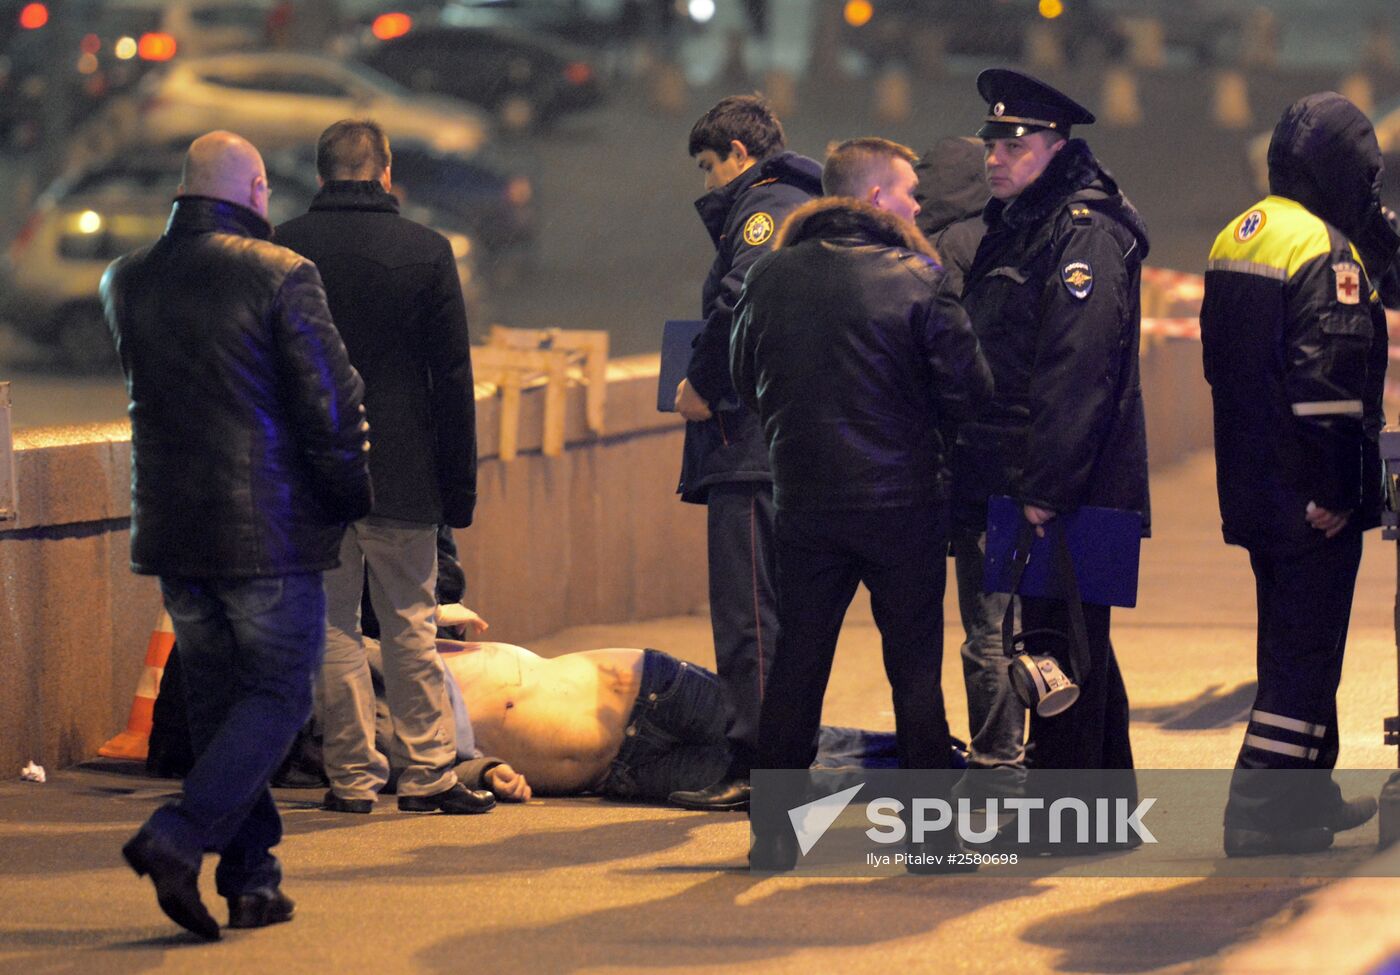 Boris Nemtsov shot dead in central Moscow